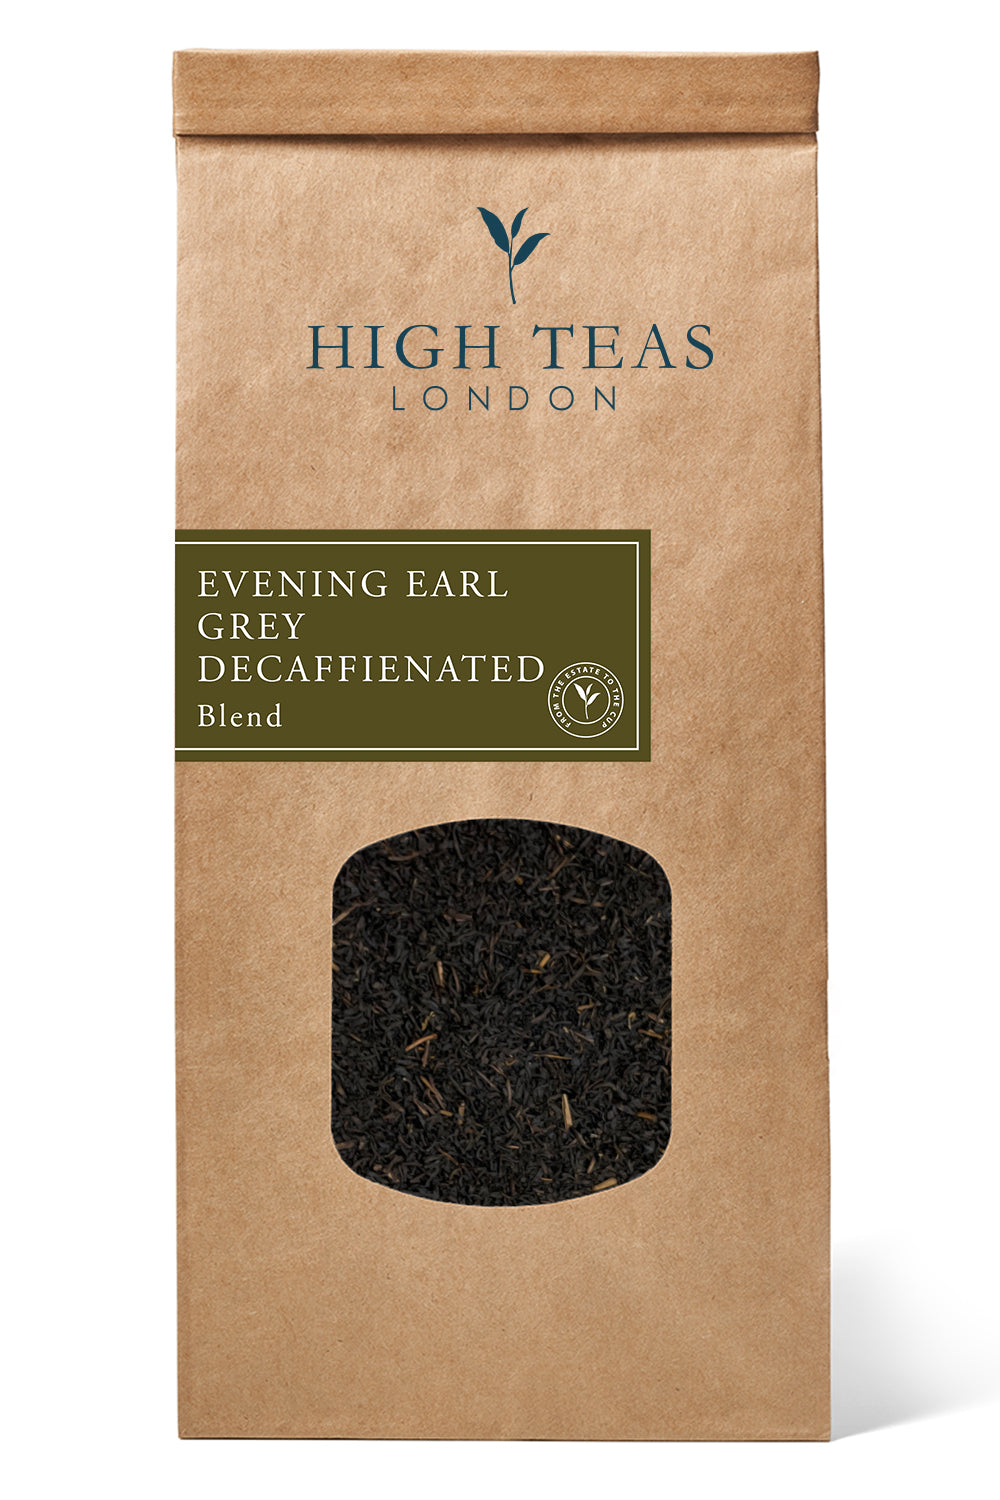 Evening Earl Grey Decaffeinated Leaf-250g-Loose Leaf Tea-High Teas